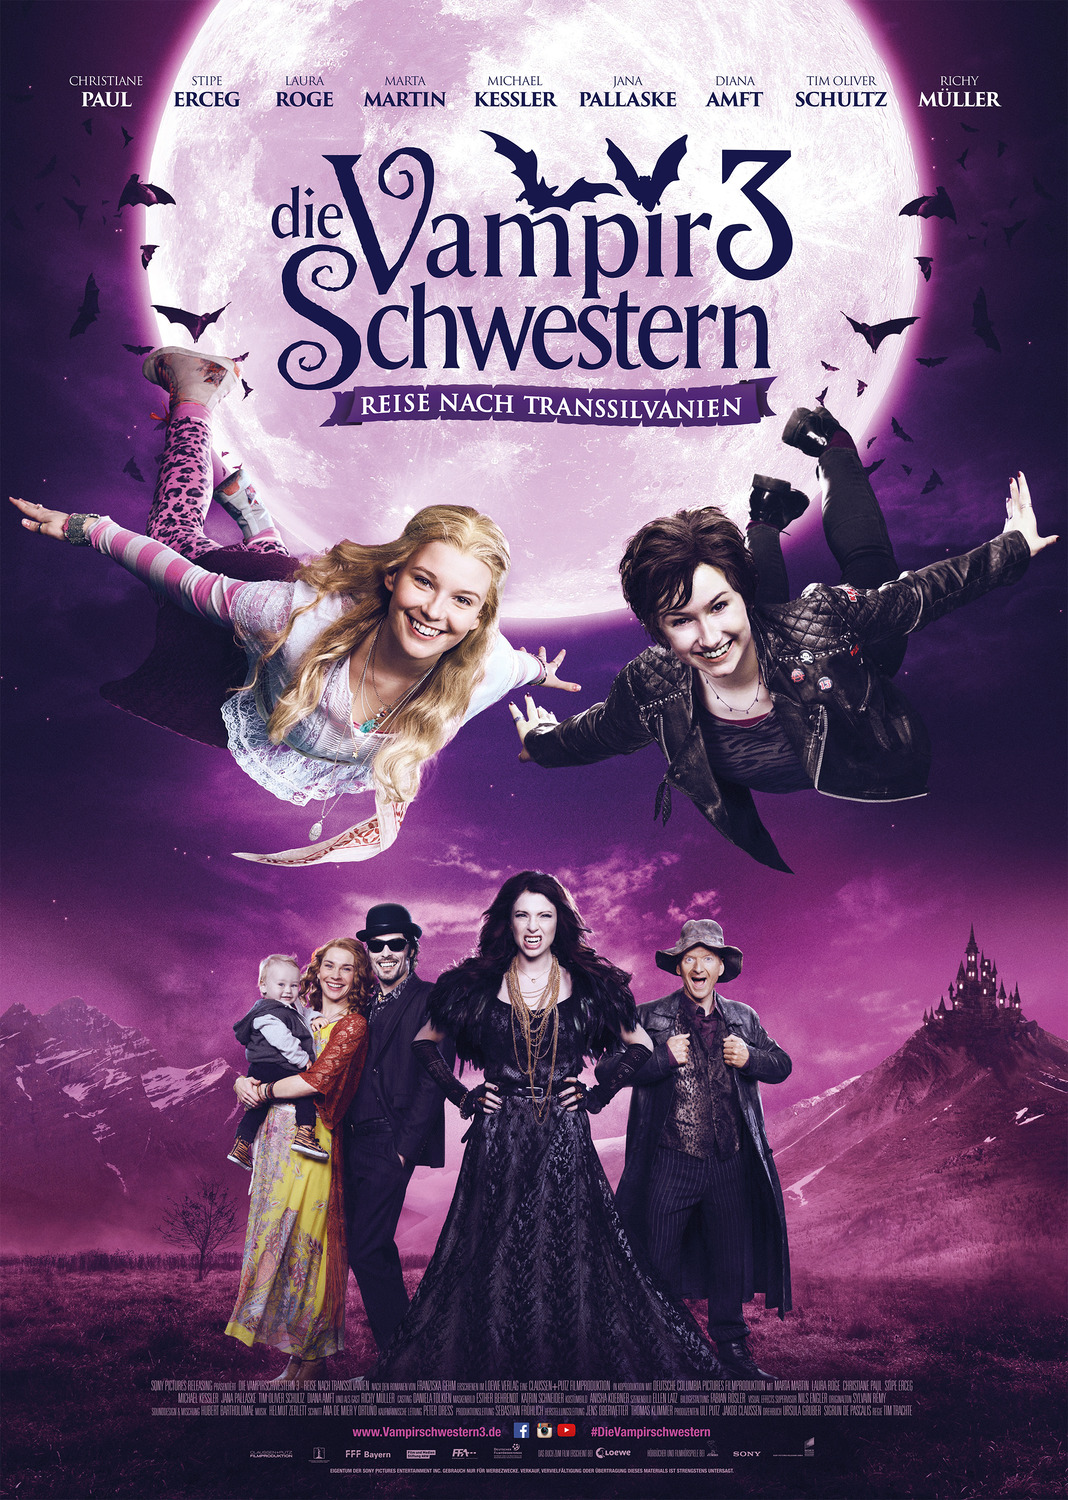 Extra Large Movie Poster Image for Die Vampirschwestern 3 - Reise nach Transsilvanien 